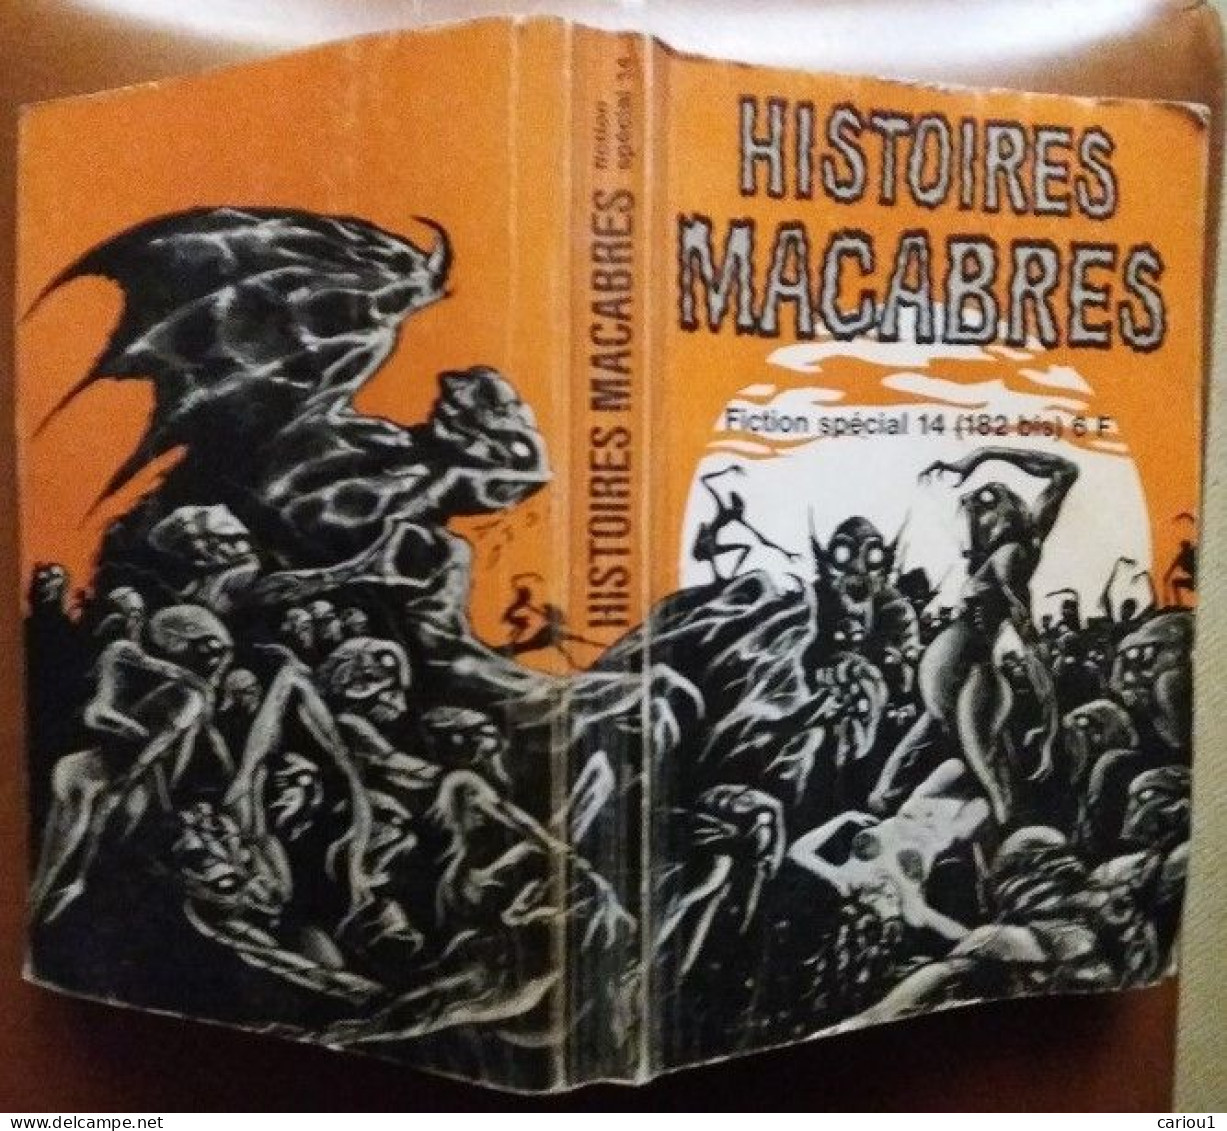 C1 Fiction Special HISTOIRES MACABRES 1969 Couv DRUILLET  PORT INCLUS France - Druillet